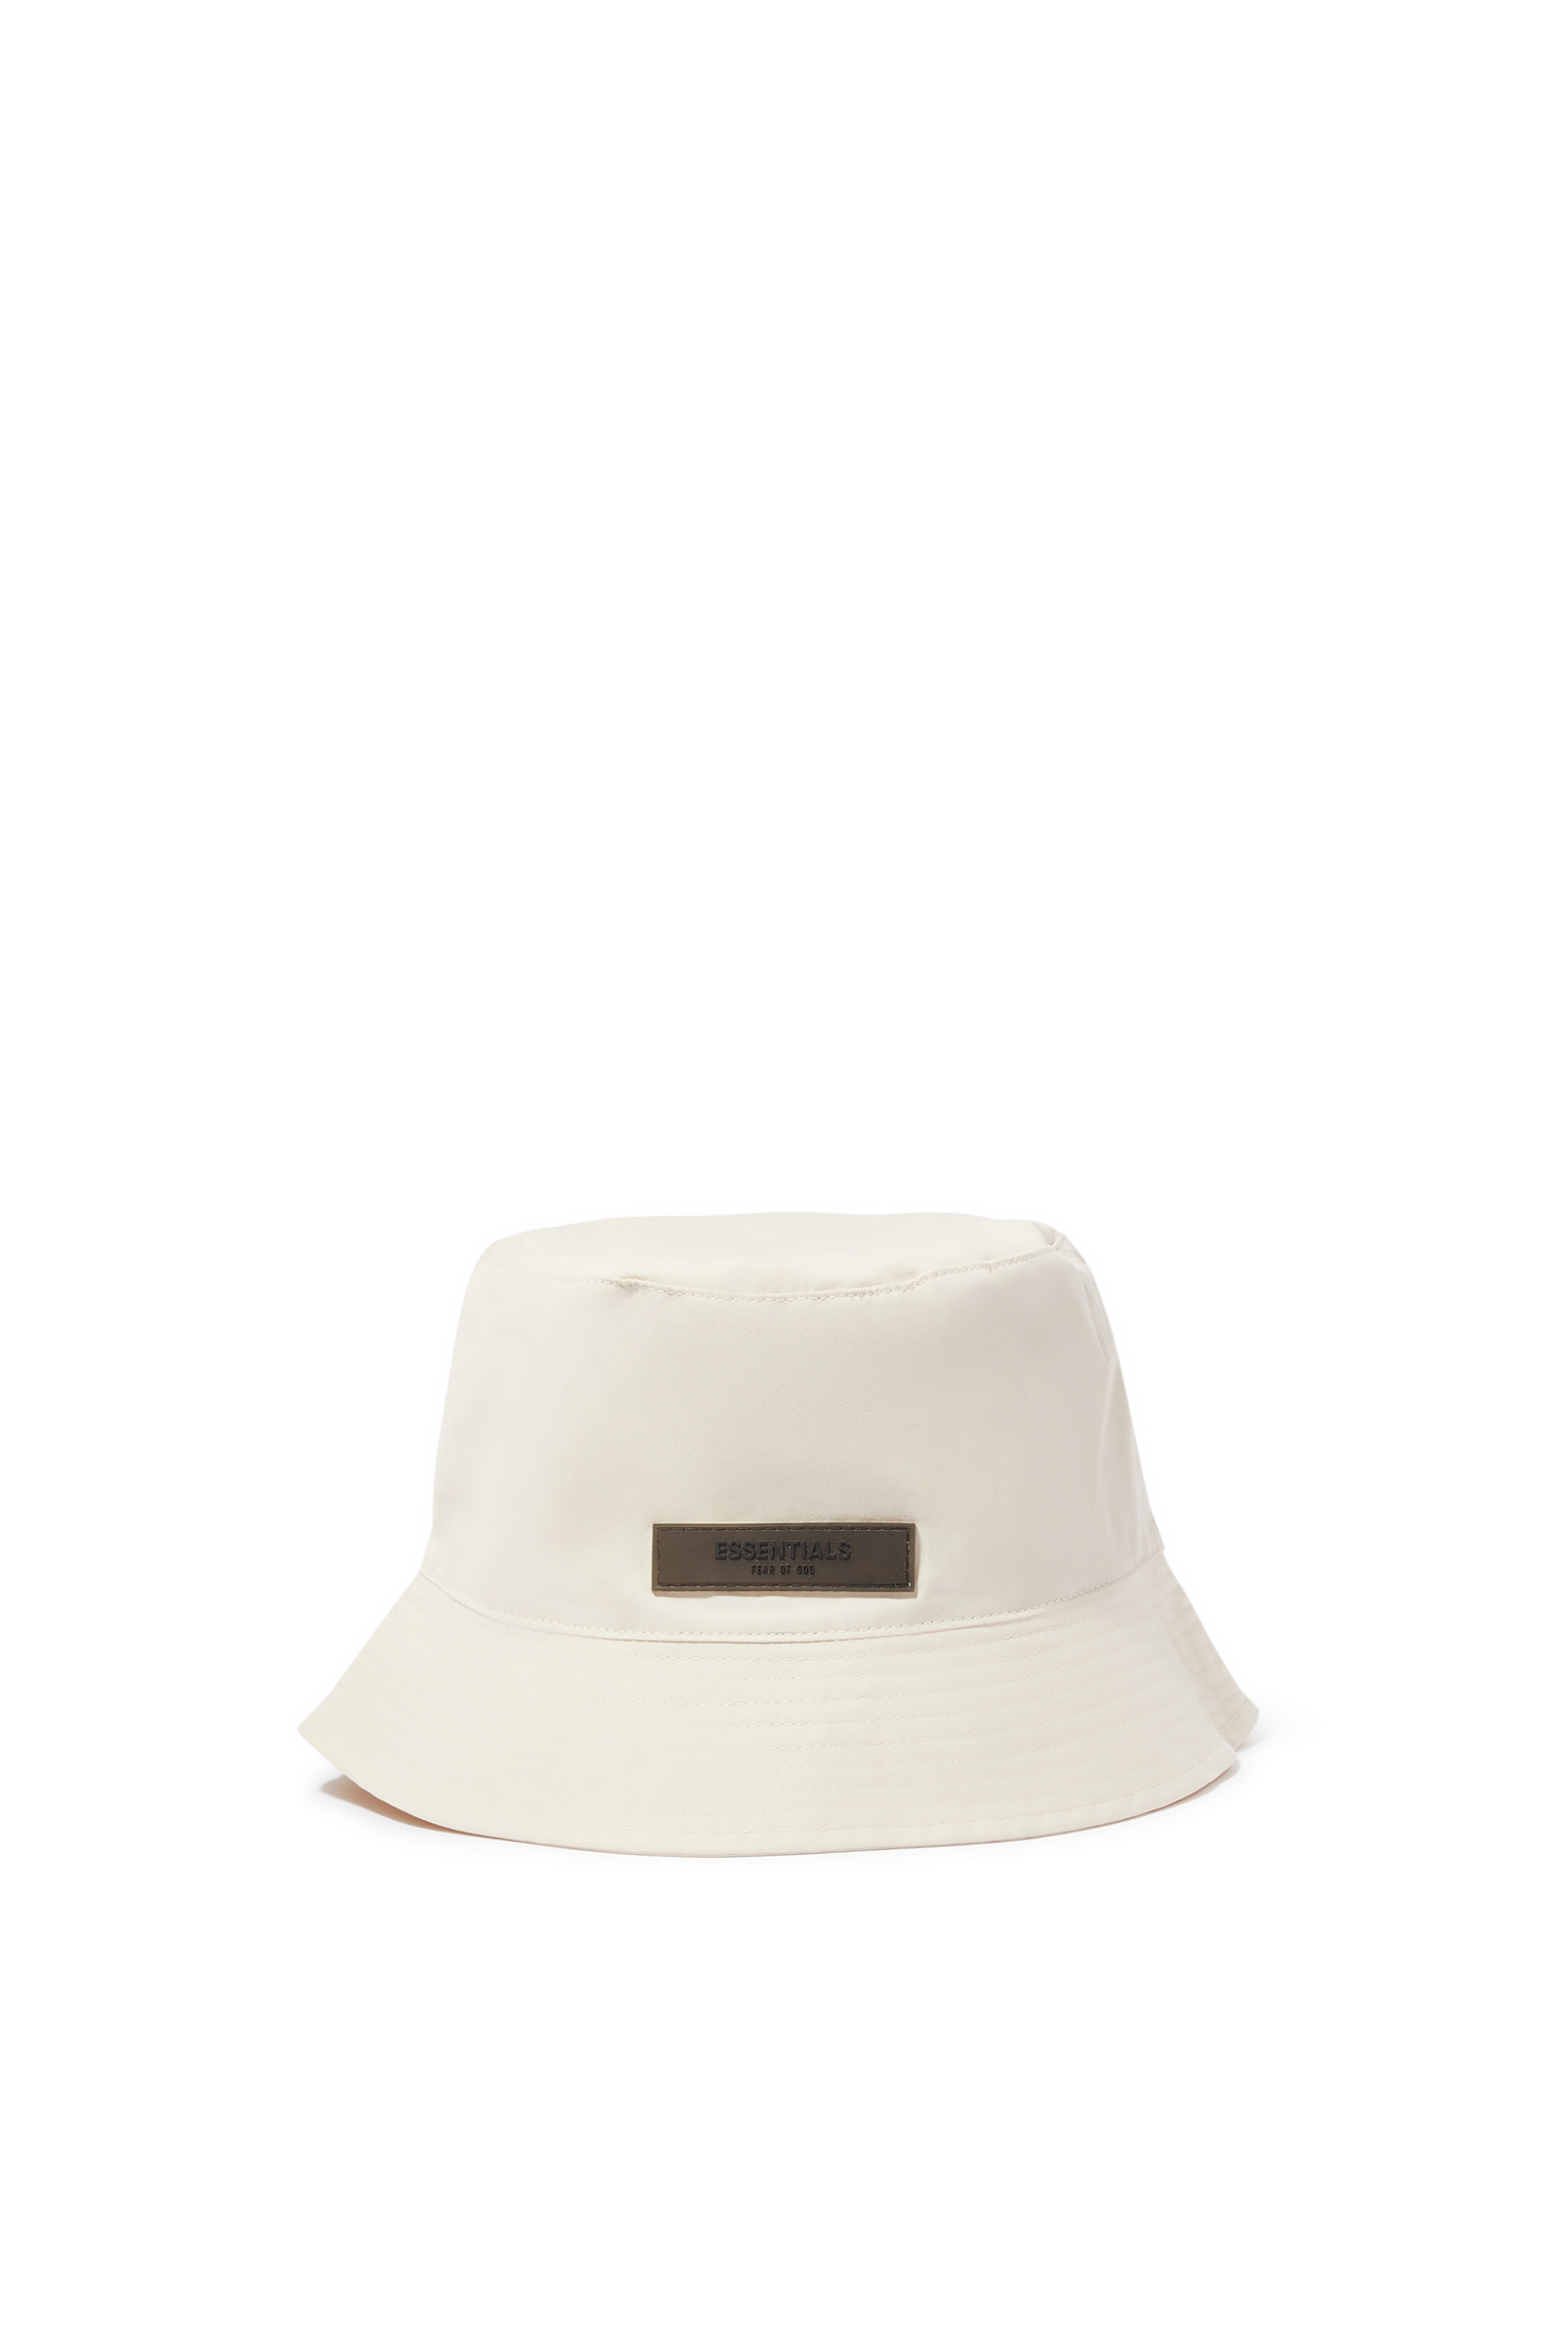 Buy Fear of God Essentials Logo Bucket Hat for Mens | Bloomingdale's UAE